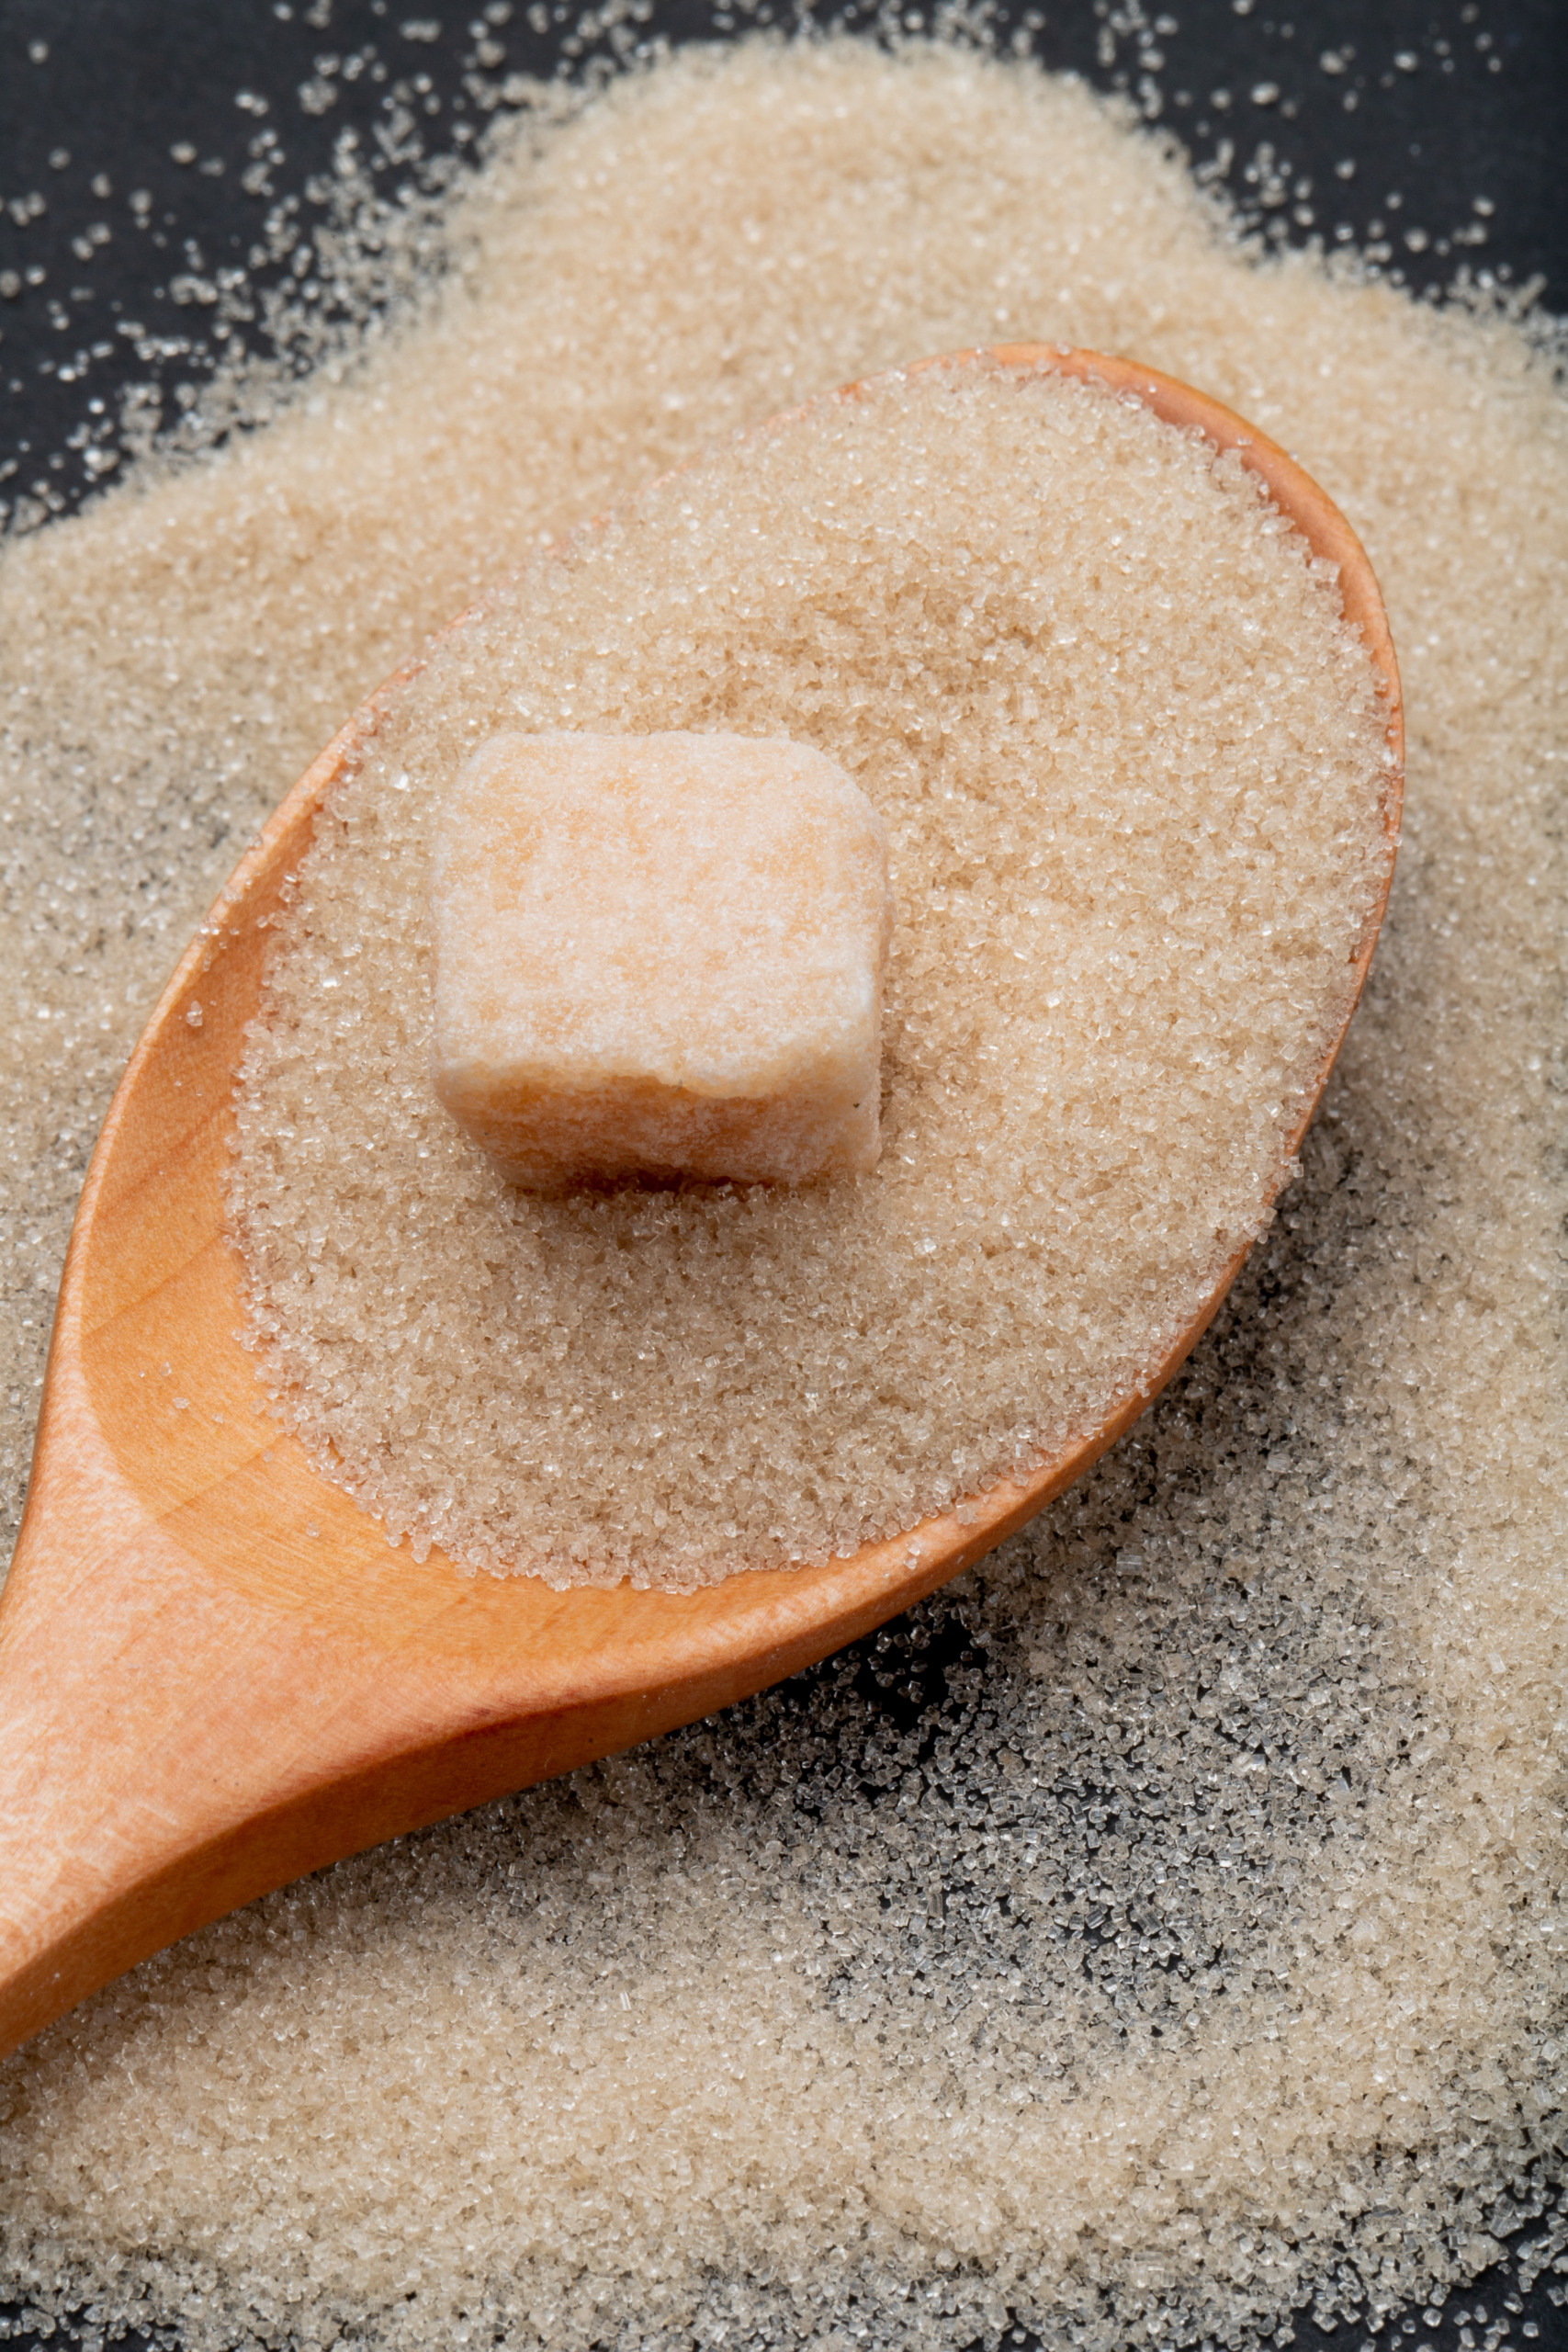 Equidade na cana-de-açúcar: o caminho para um pagamento justo e sustentável